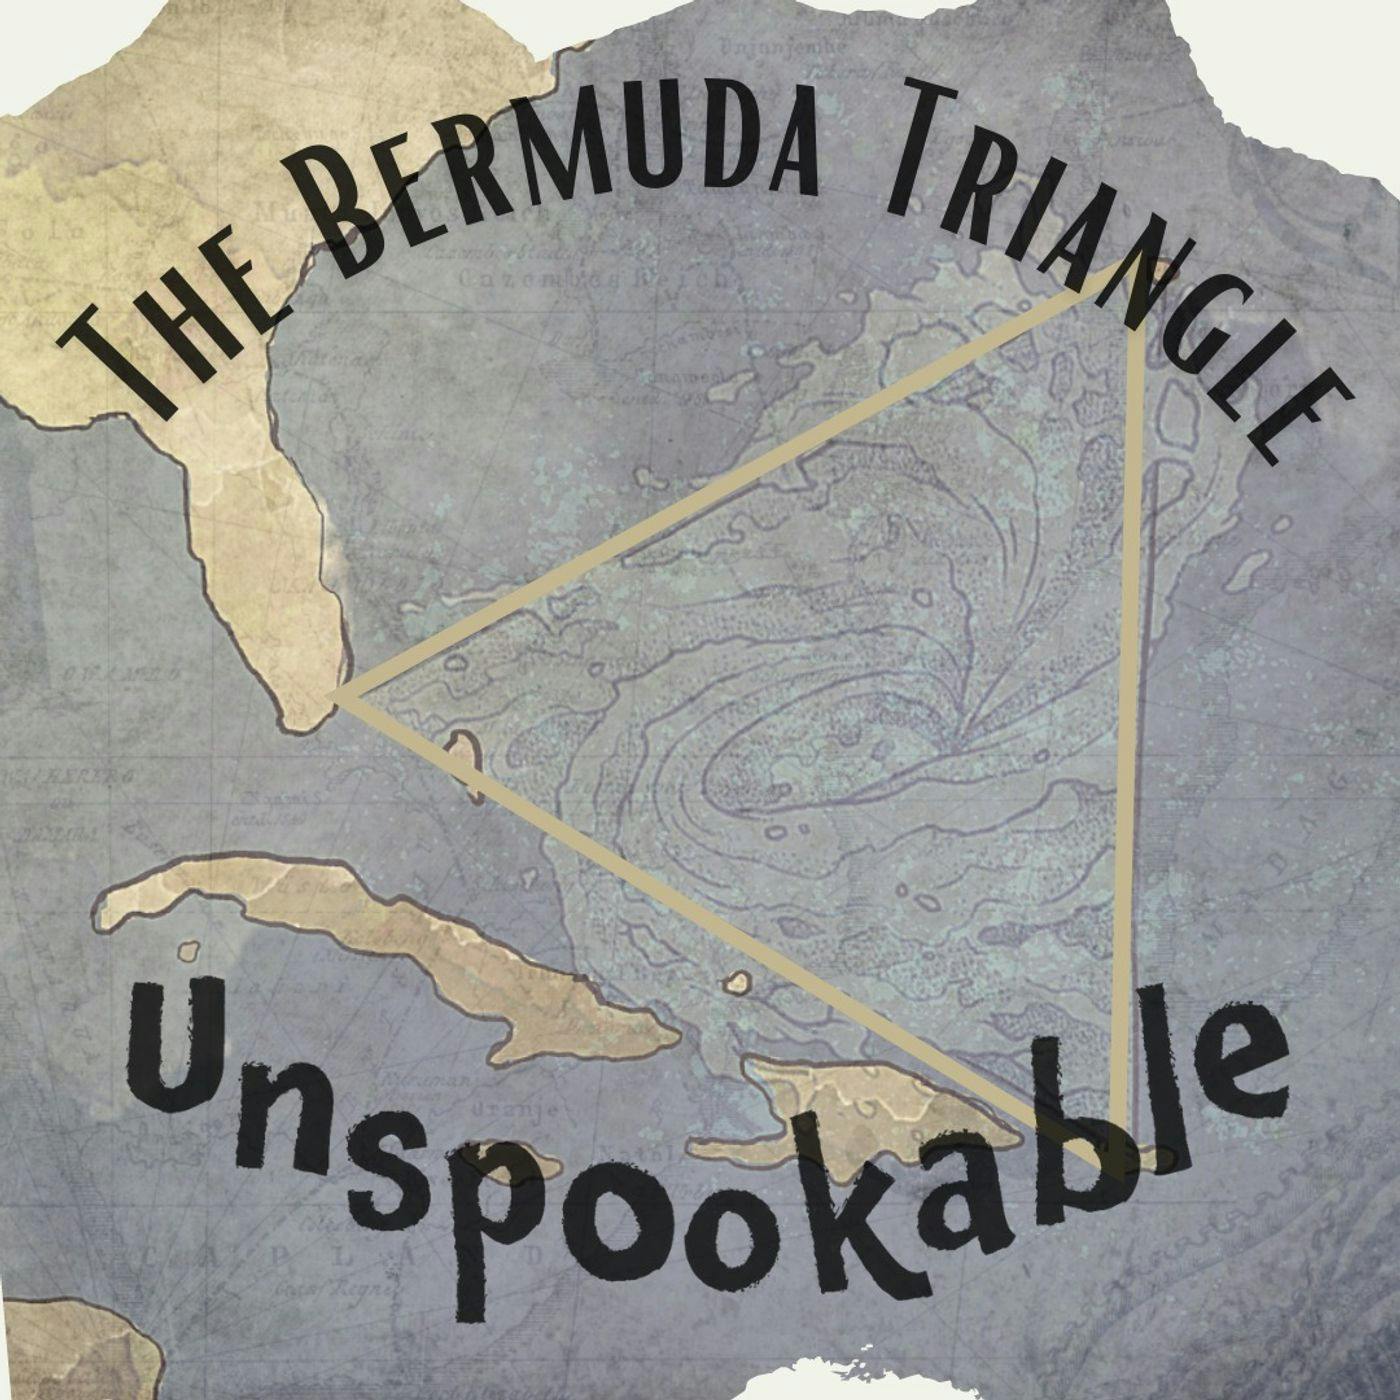 Episode 36: The Bermuda Triangle